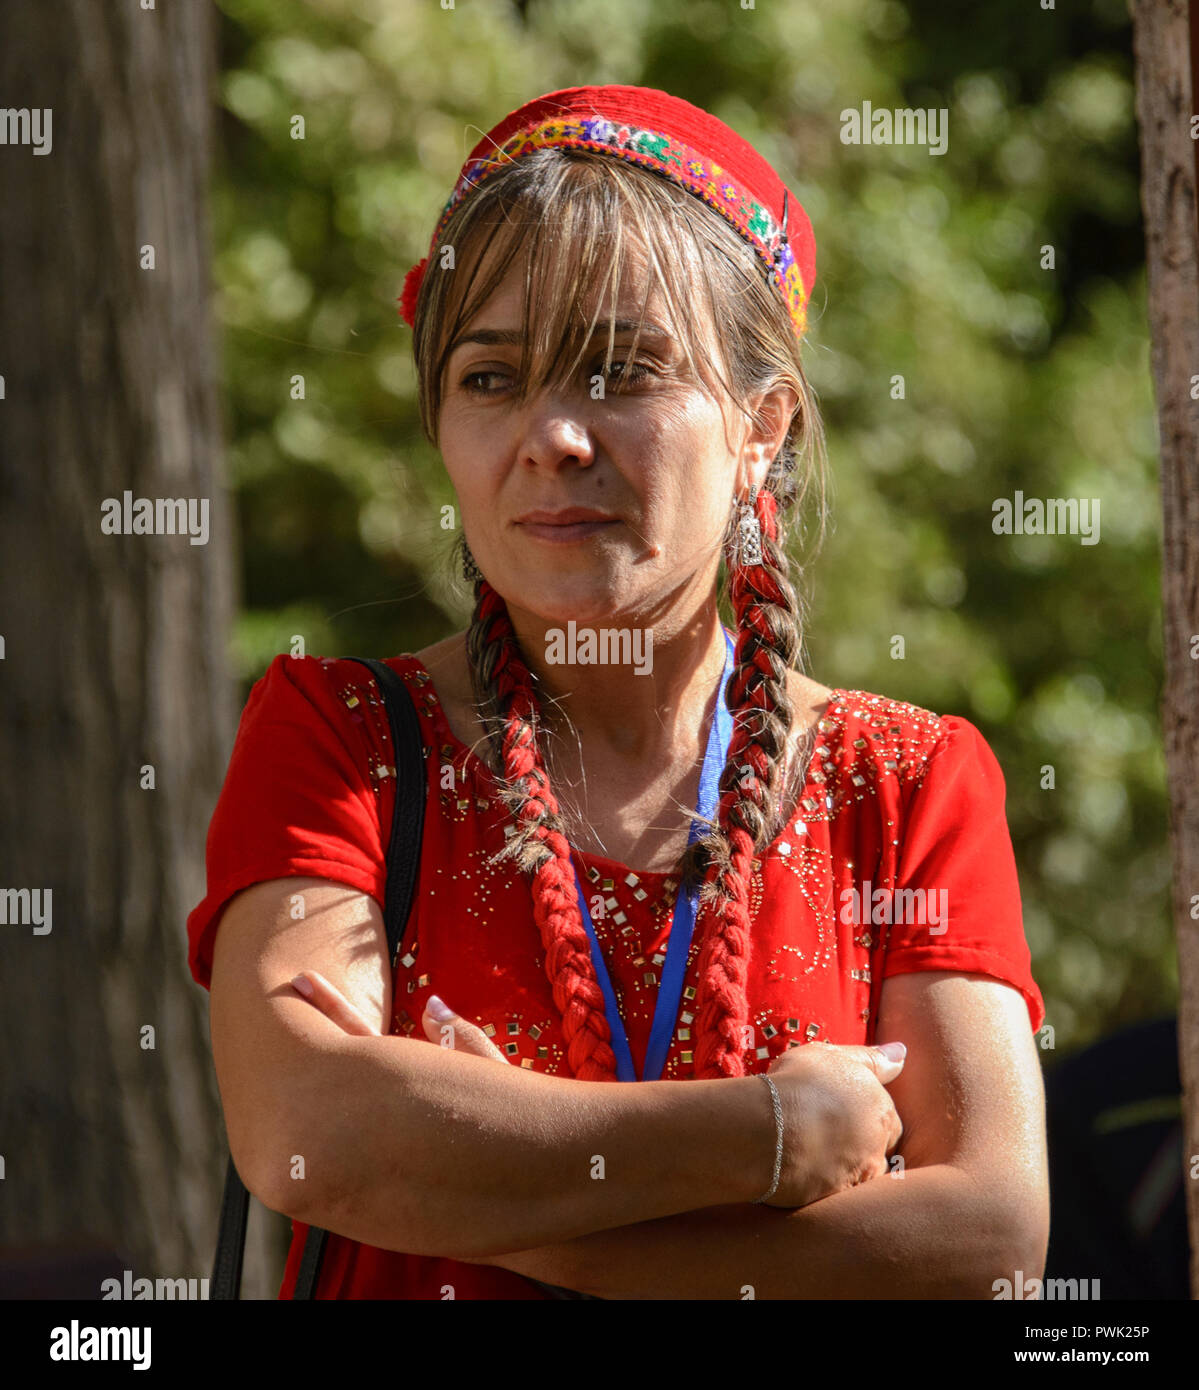 Porträt einer Frau, pamiri Khorog, Tadschikistan Stockfoto